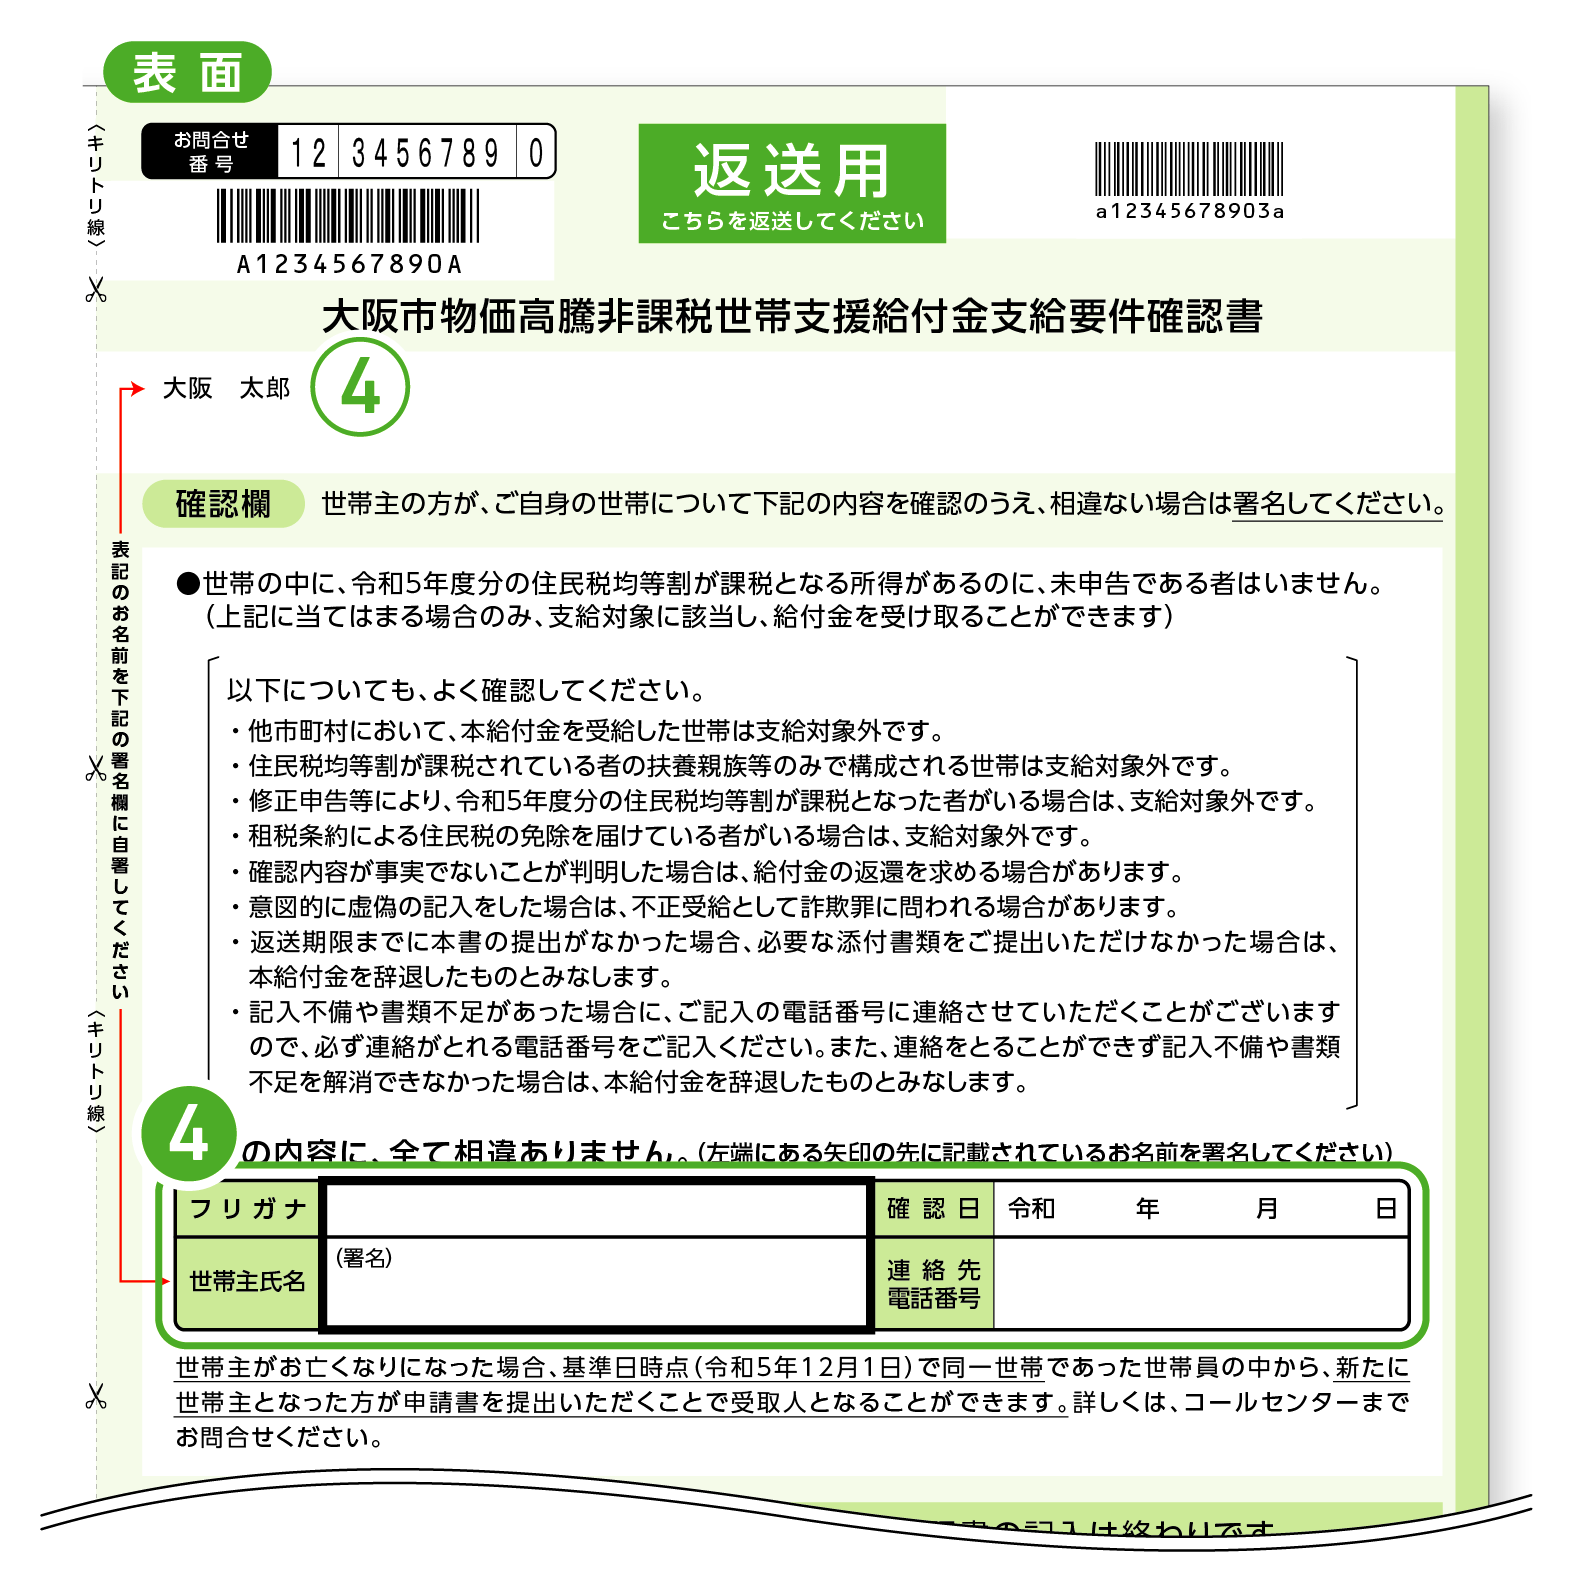 スプーンフォークセット800円確認o(*^▽^*)o